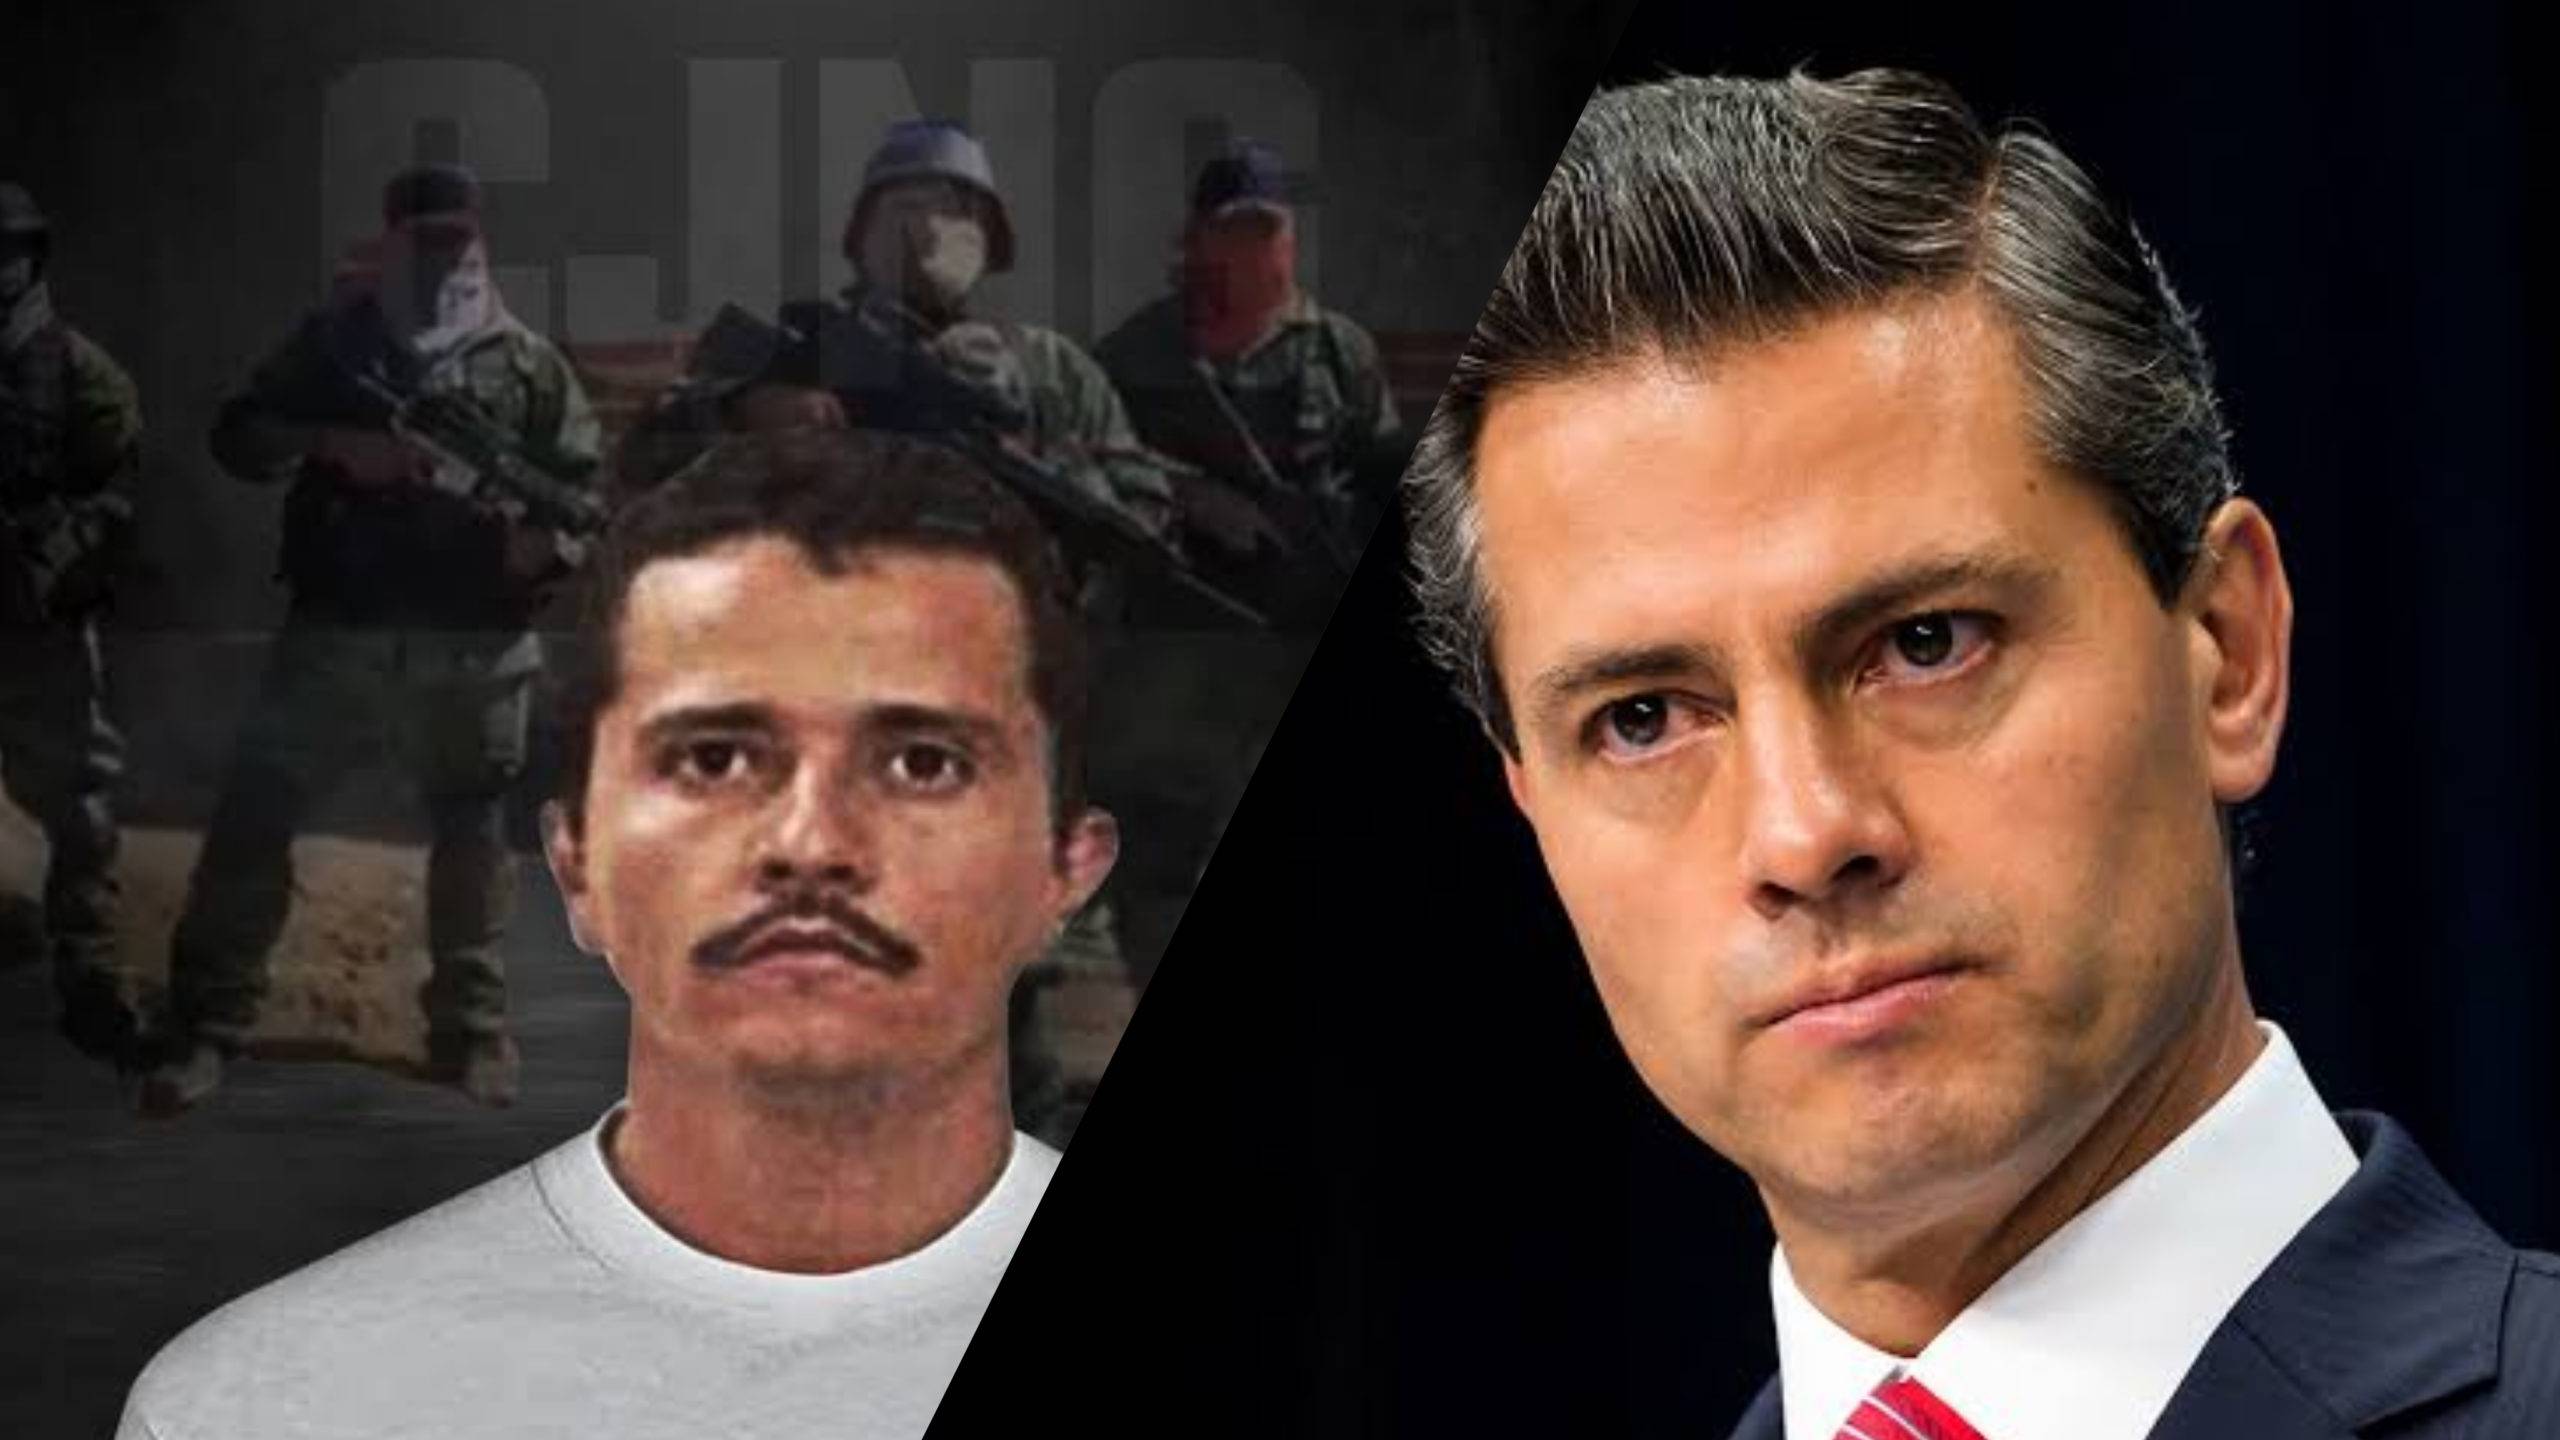 El CJNG fue el menos perseguido durante la administración de Peña Nieto: FGR